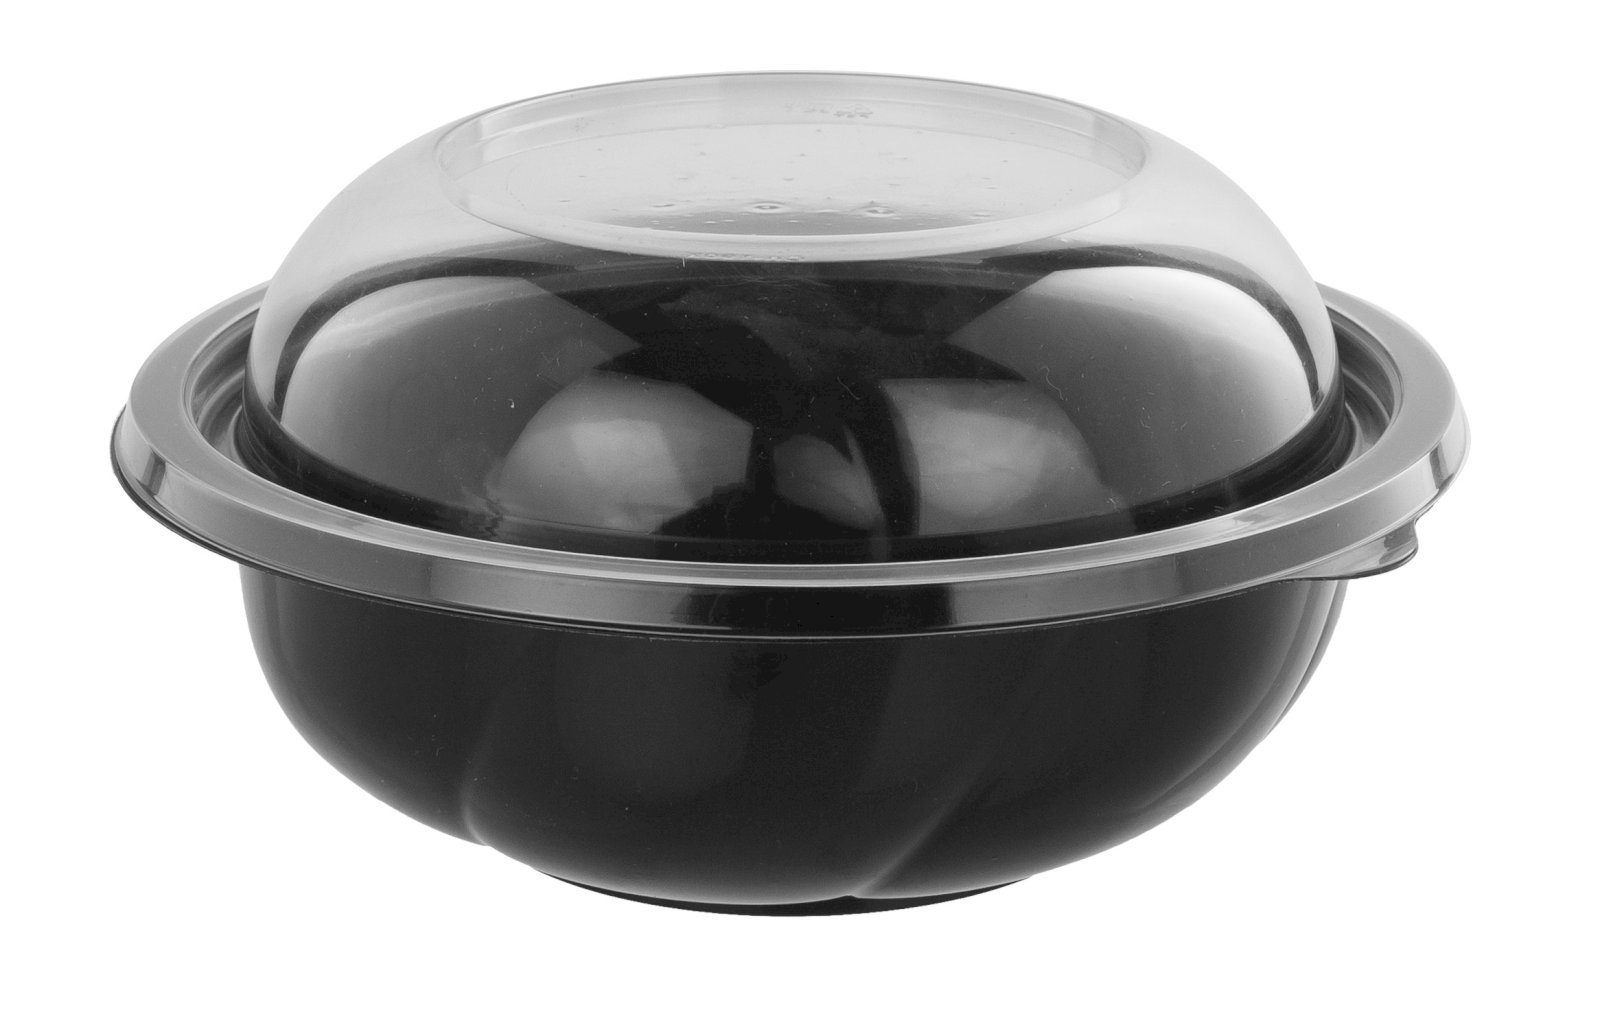 Контейнер СпК-190 изготовлен из ПЭТ черного цвета. Предназначен для упаковки салатов, десертов, кондитерских изделий, орехов, сухофруктов, холодных закусок. Объем 1000 мл, диаметр 189 мм. Поставляется без крышки, артикул крышки для контейнера 17-2413, 17-2414. В упаковке 300 штук.